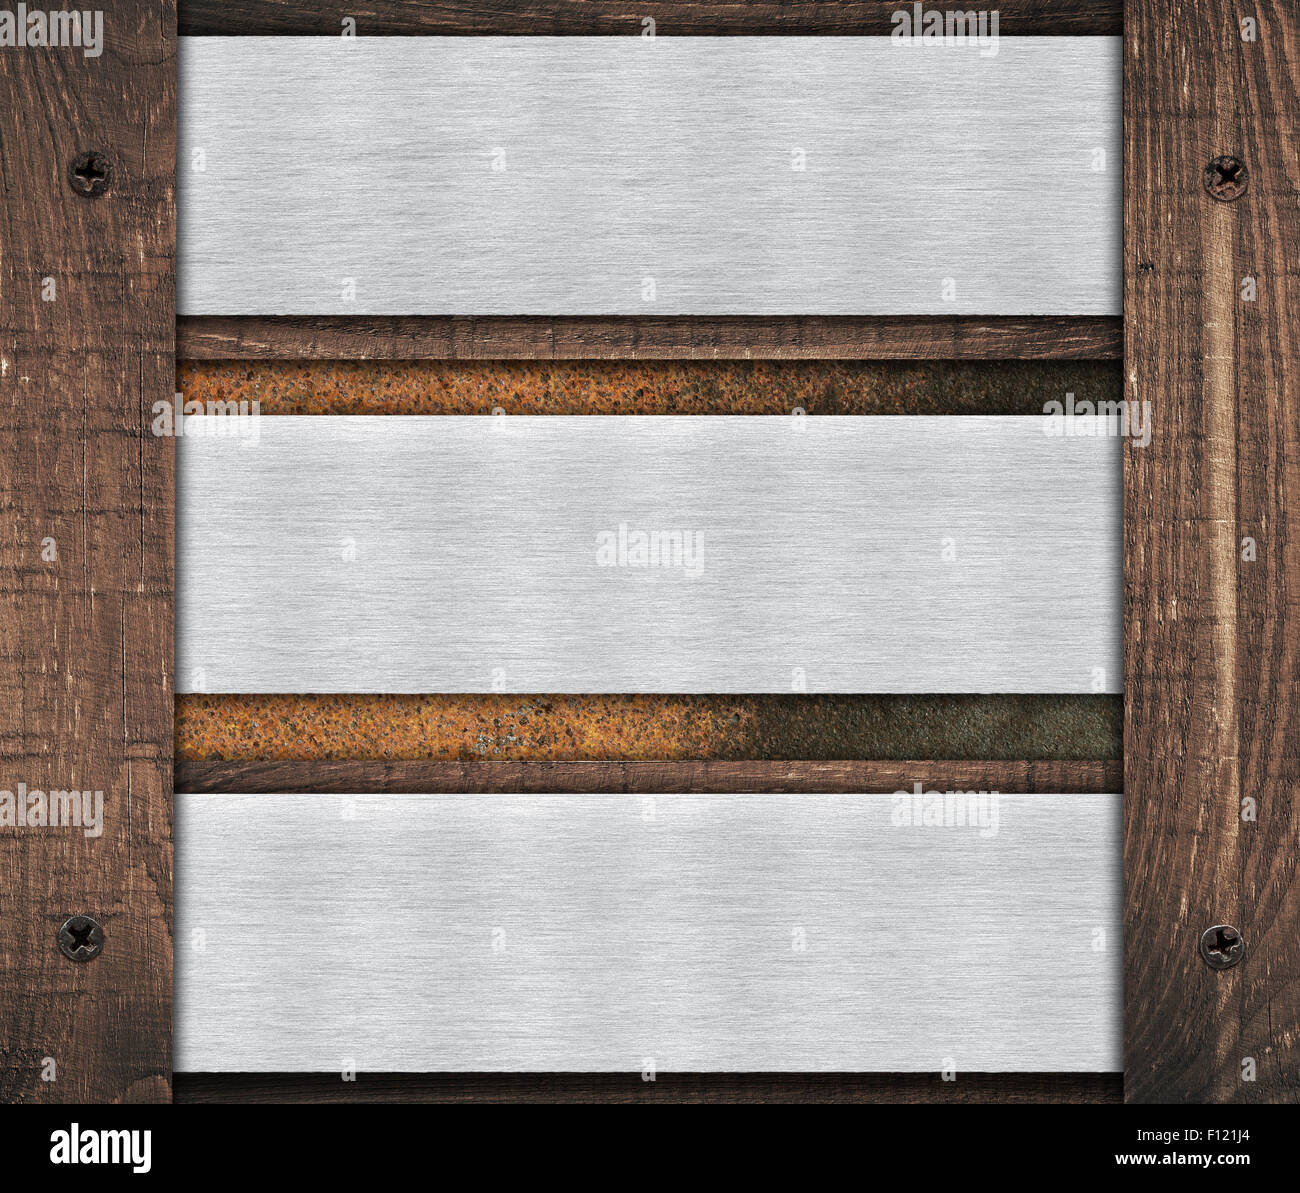 Composition de la plaque en métal aluminium, plaque et vieux mur en bois avivés Banque D'Images